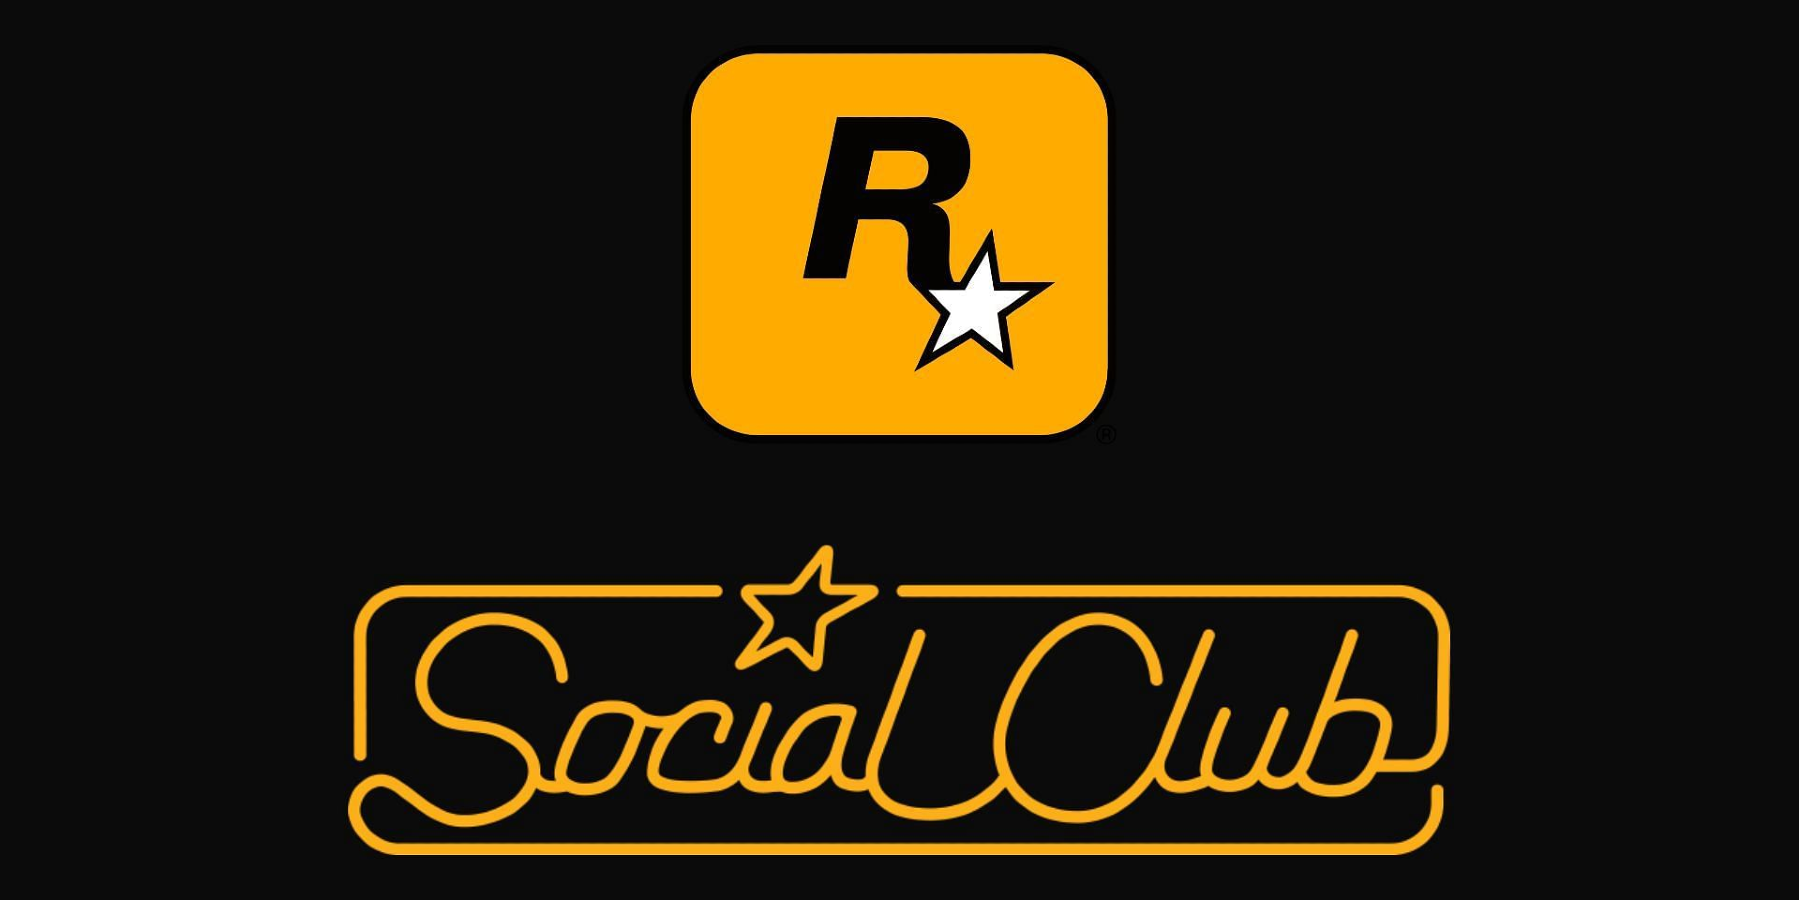 TUT] Rockstar Games Social Club Logo - GFX Requests & Tutorials